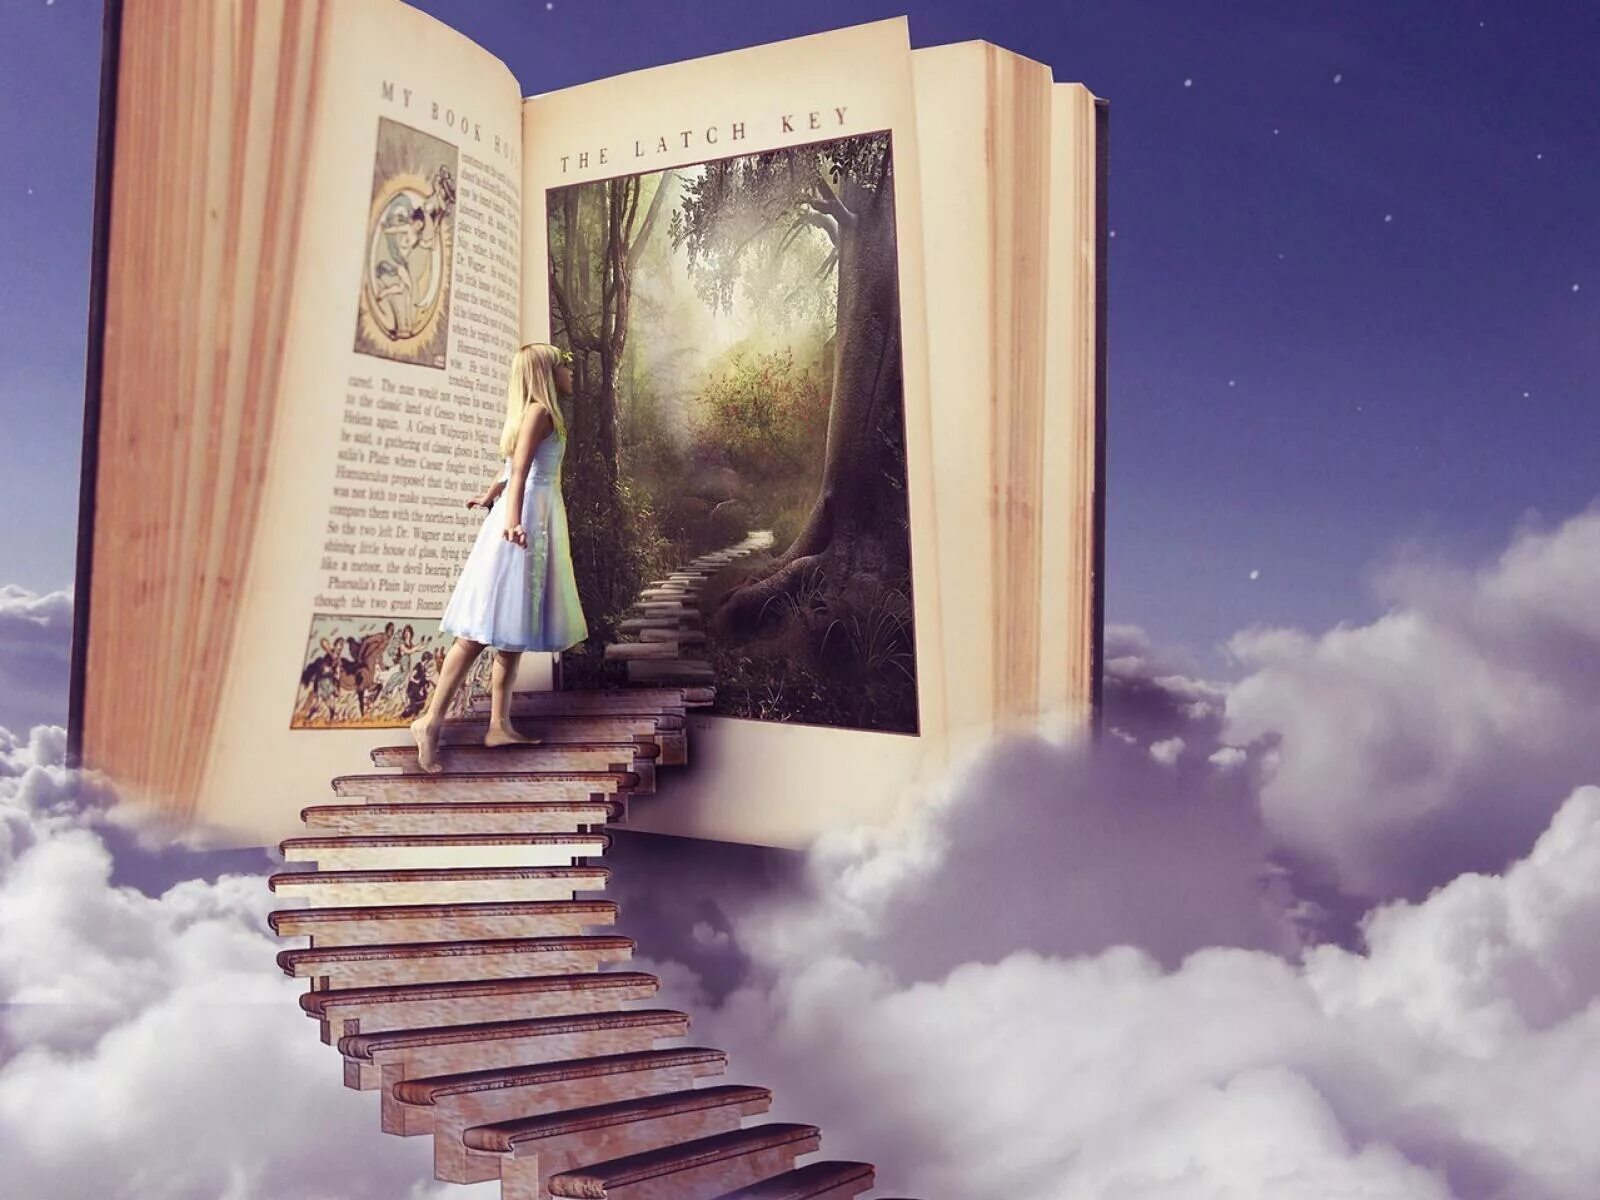 Книги в читай мечтай. Лестница из книг. Путешествие в прошлые жизни. Стремление к познанию. Новая ступень в жизни.